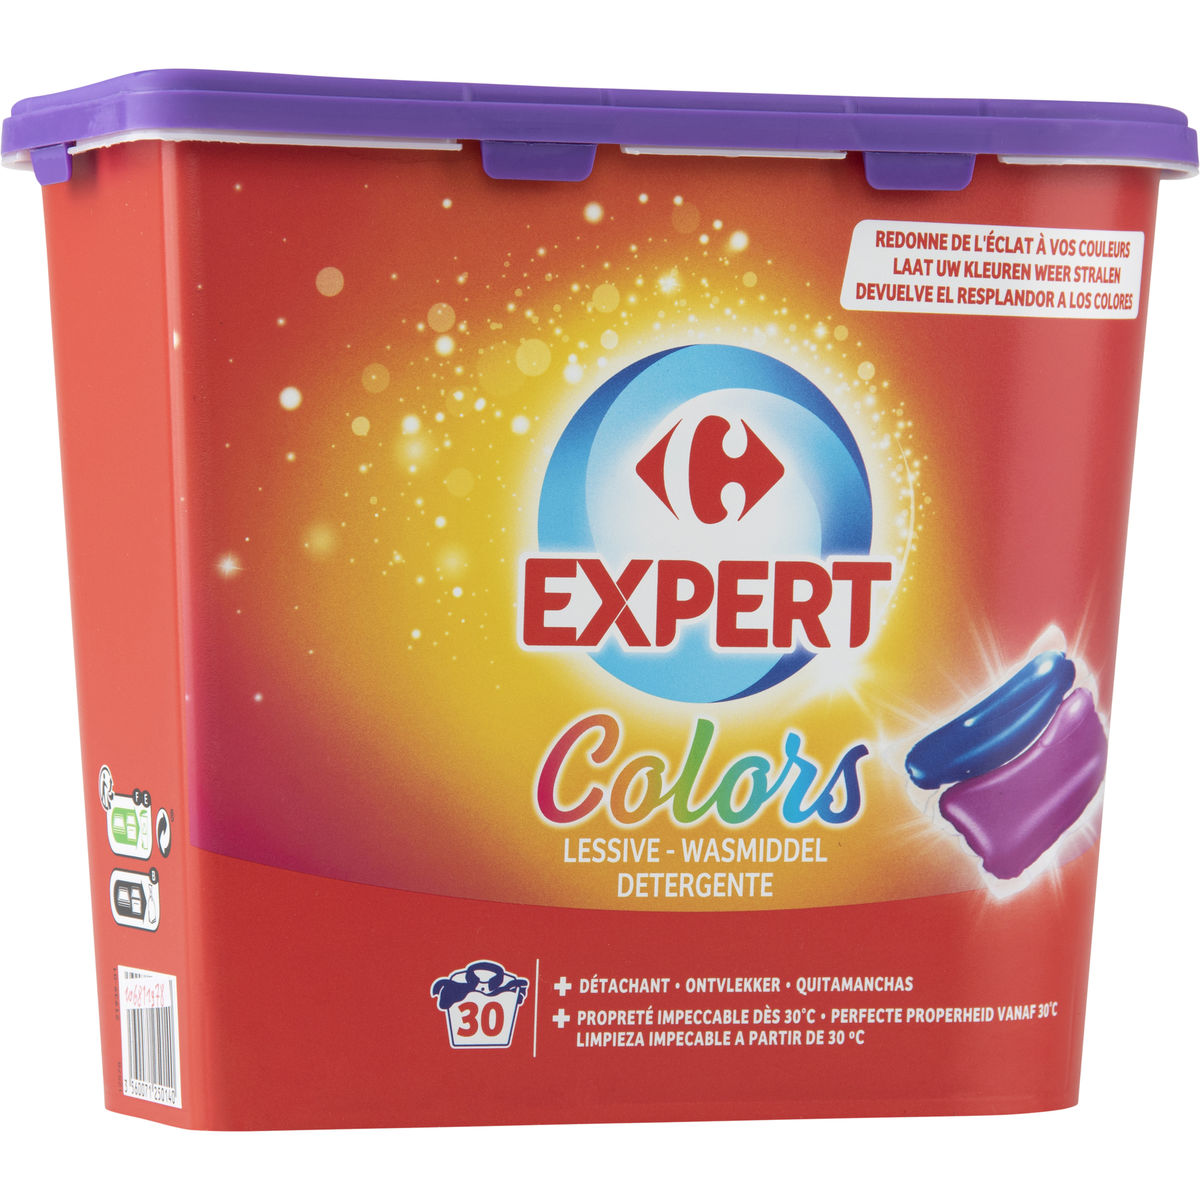 Carrefour Expert Colors Lessive Detergente 30 x 23.2 ml